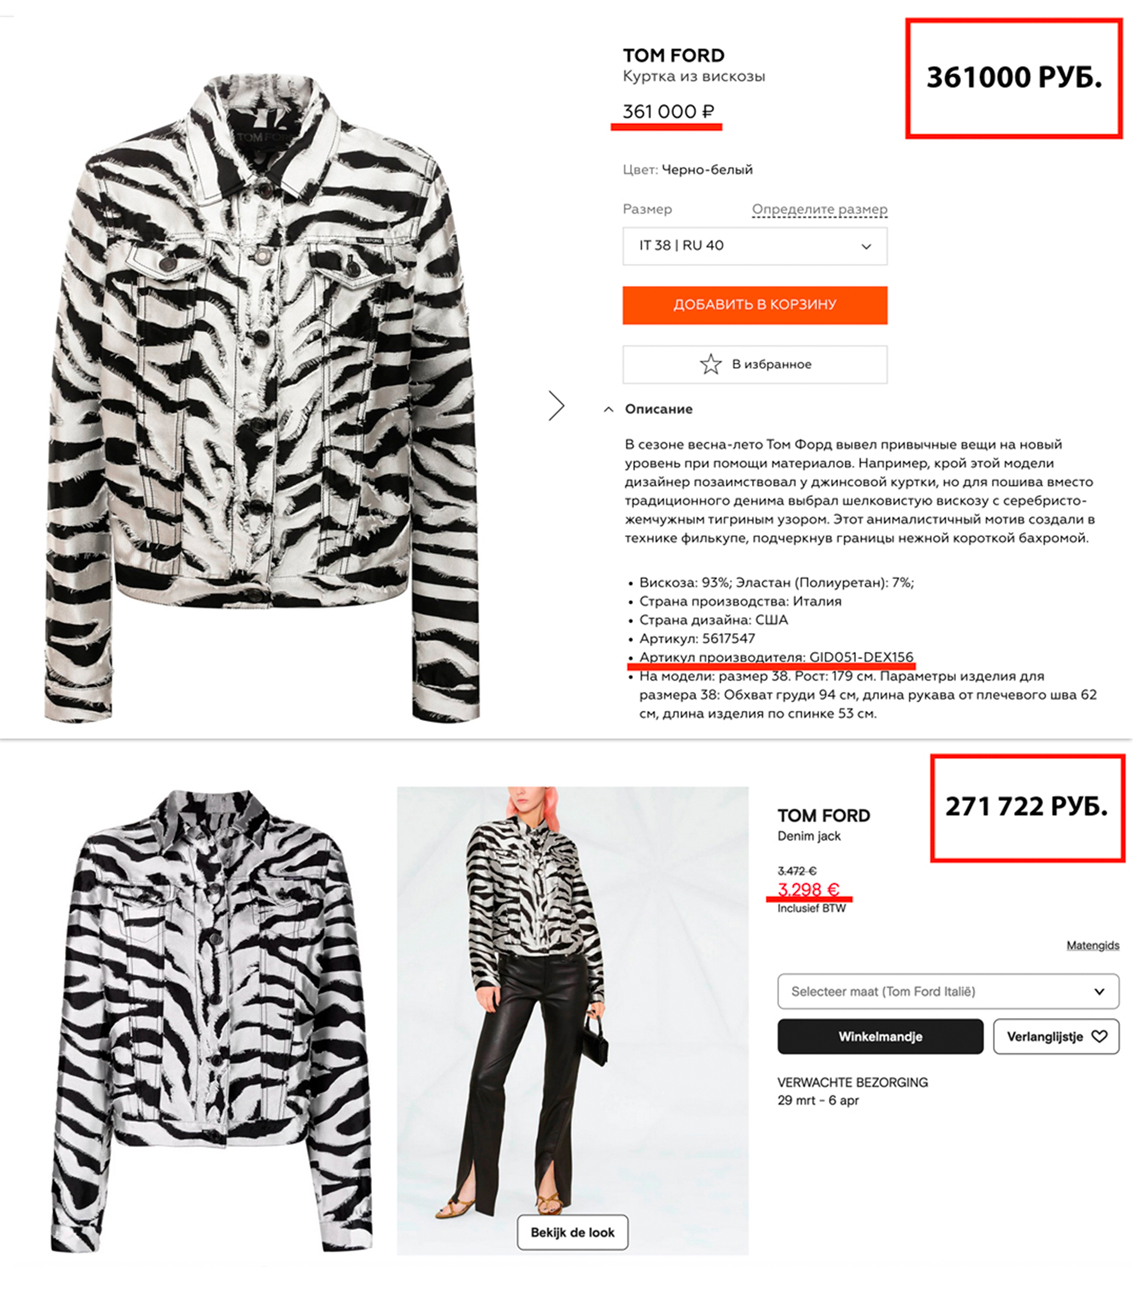 Цена на куртку в ЦУМе и в одном из европейских маркетплейсов. Фото © ЦУМ, © Farfetch